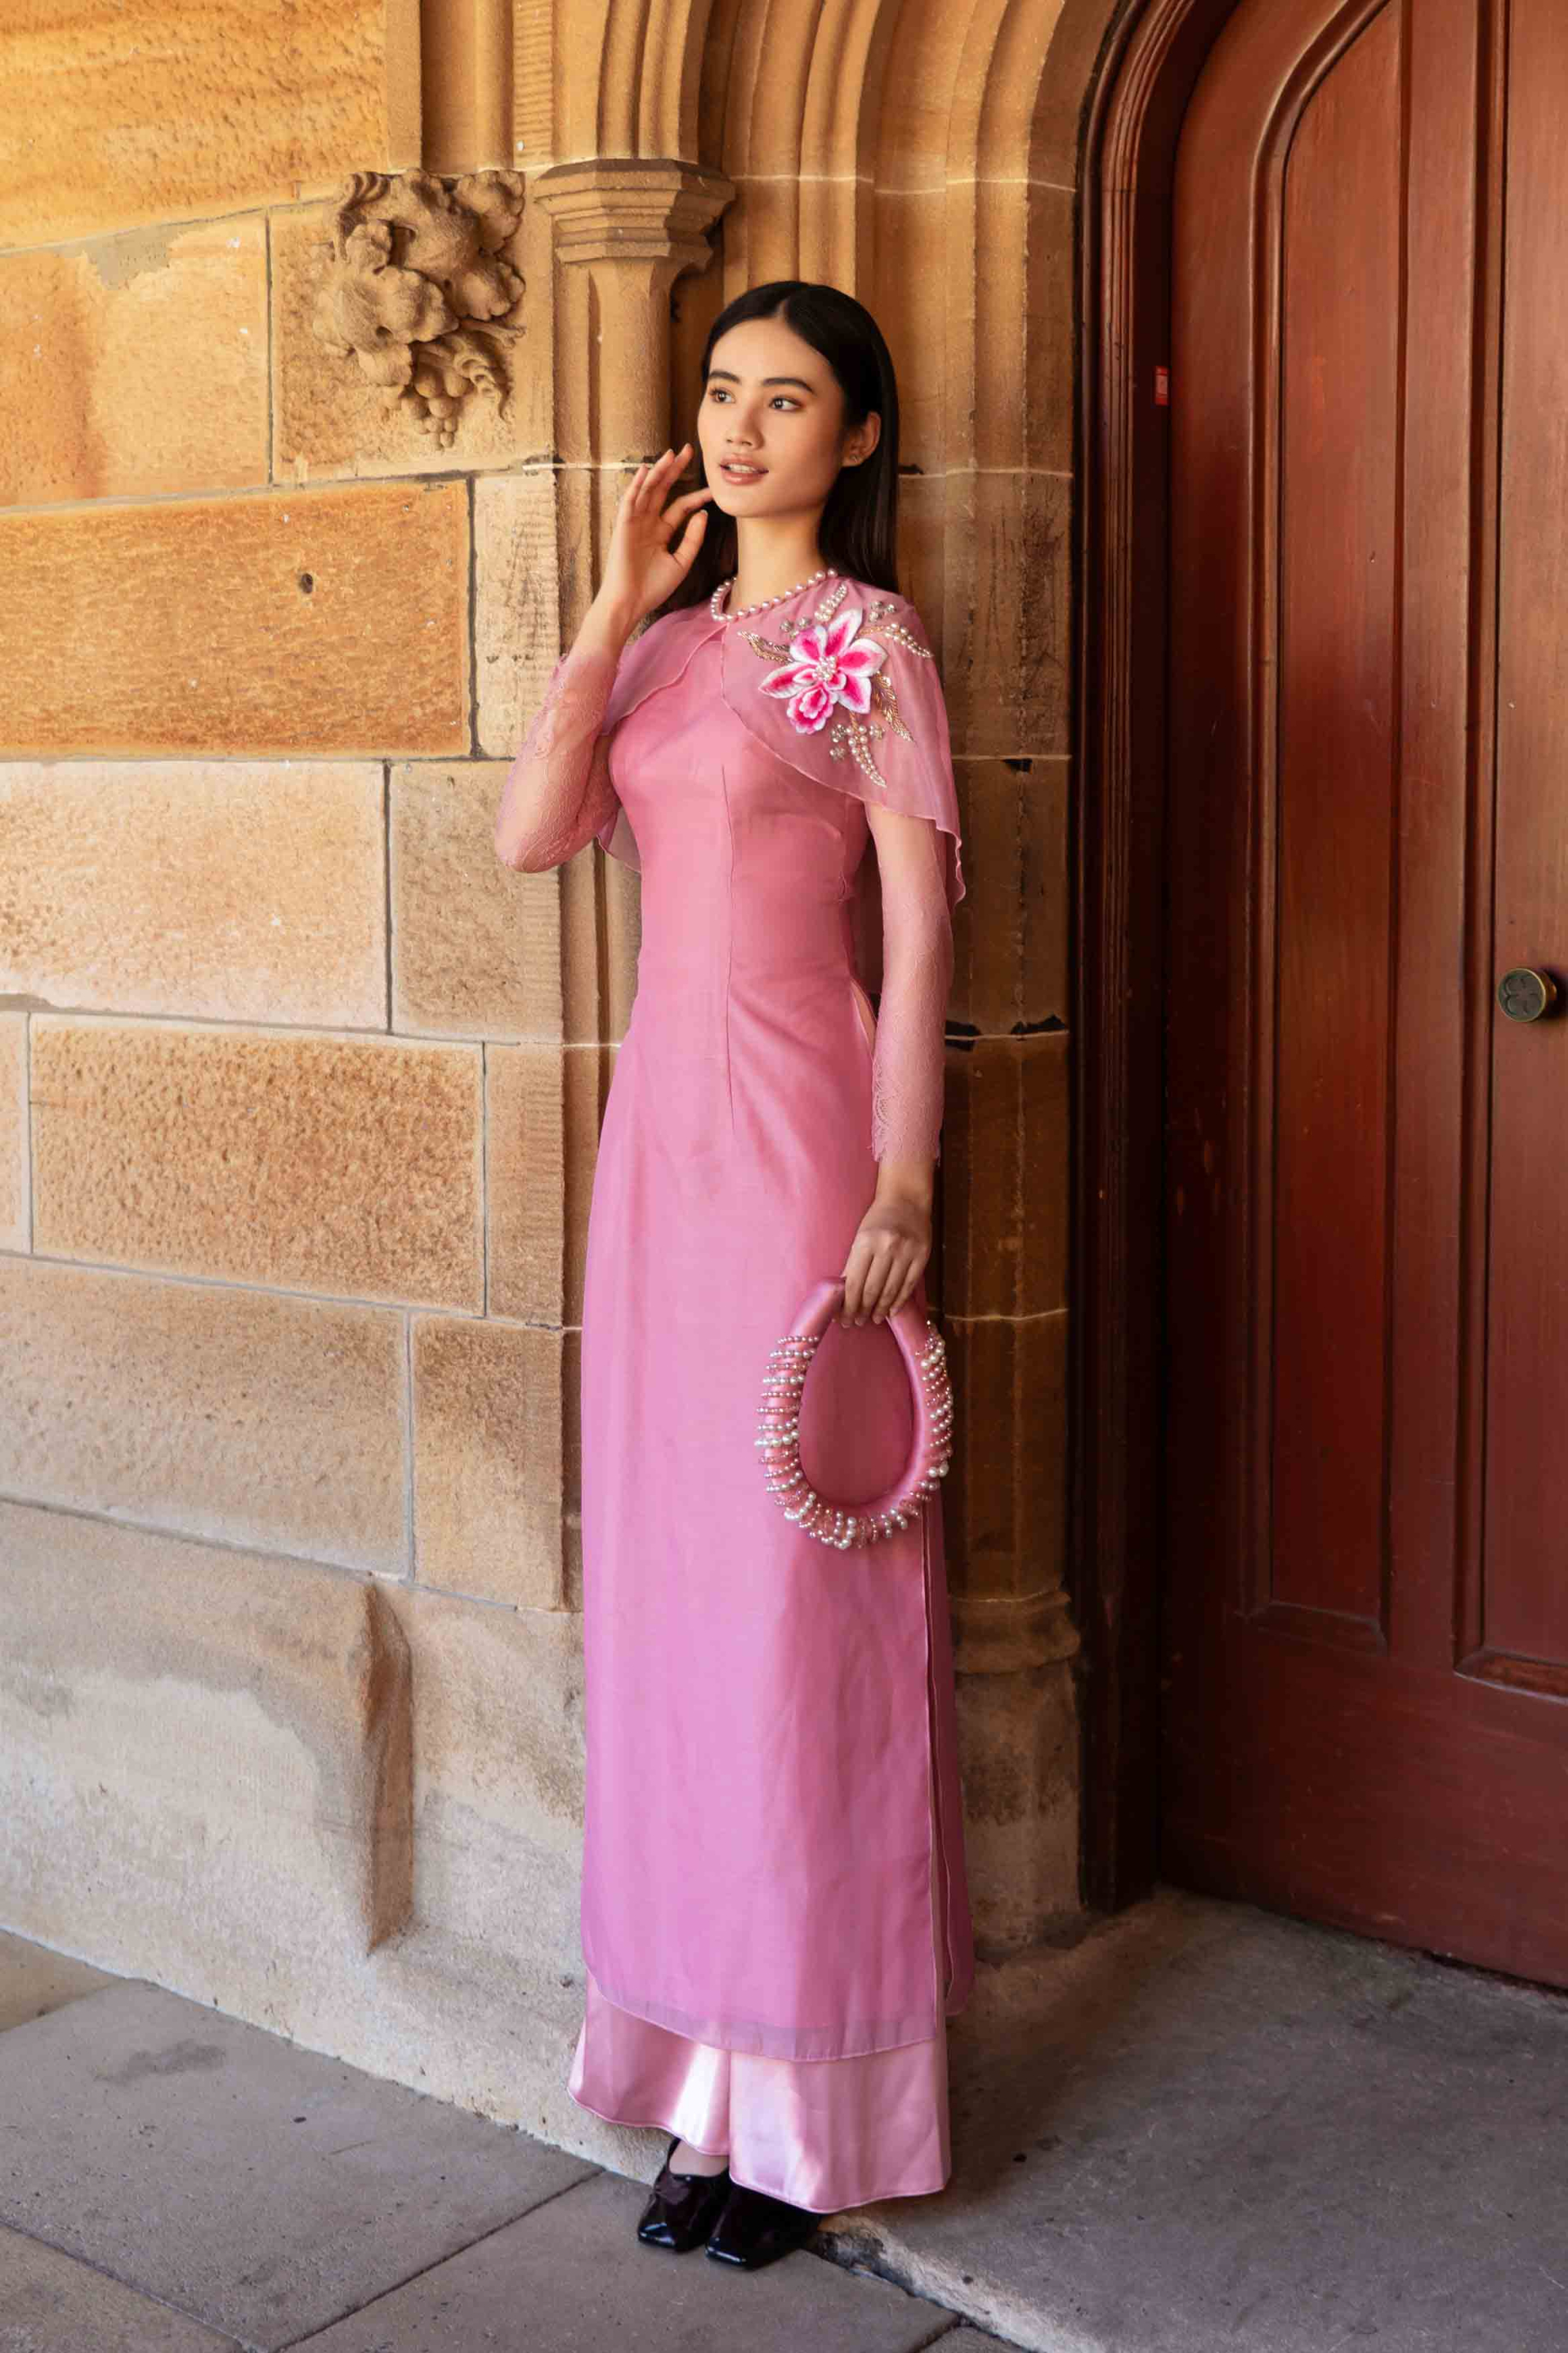 Hoa hậu Ý Nhi rạng rỡ trong tà áo dài tại Đại học Sydney - Úc - ảnh 1